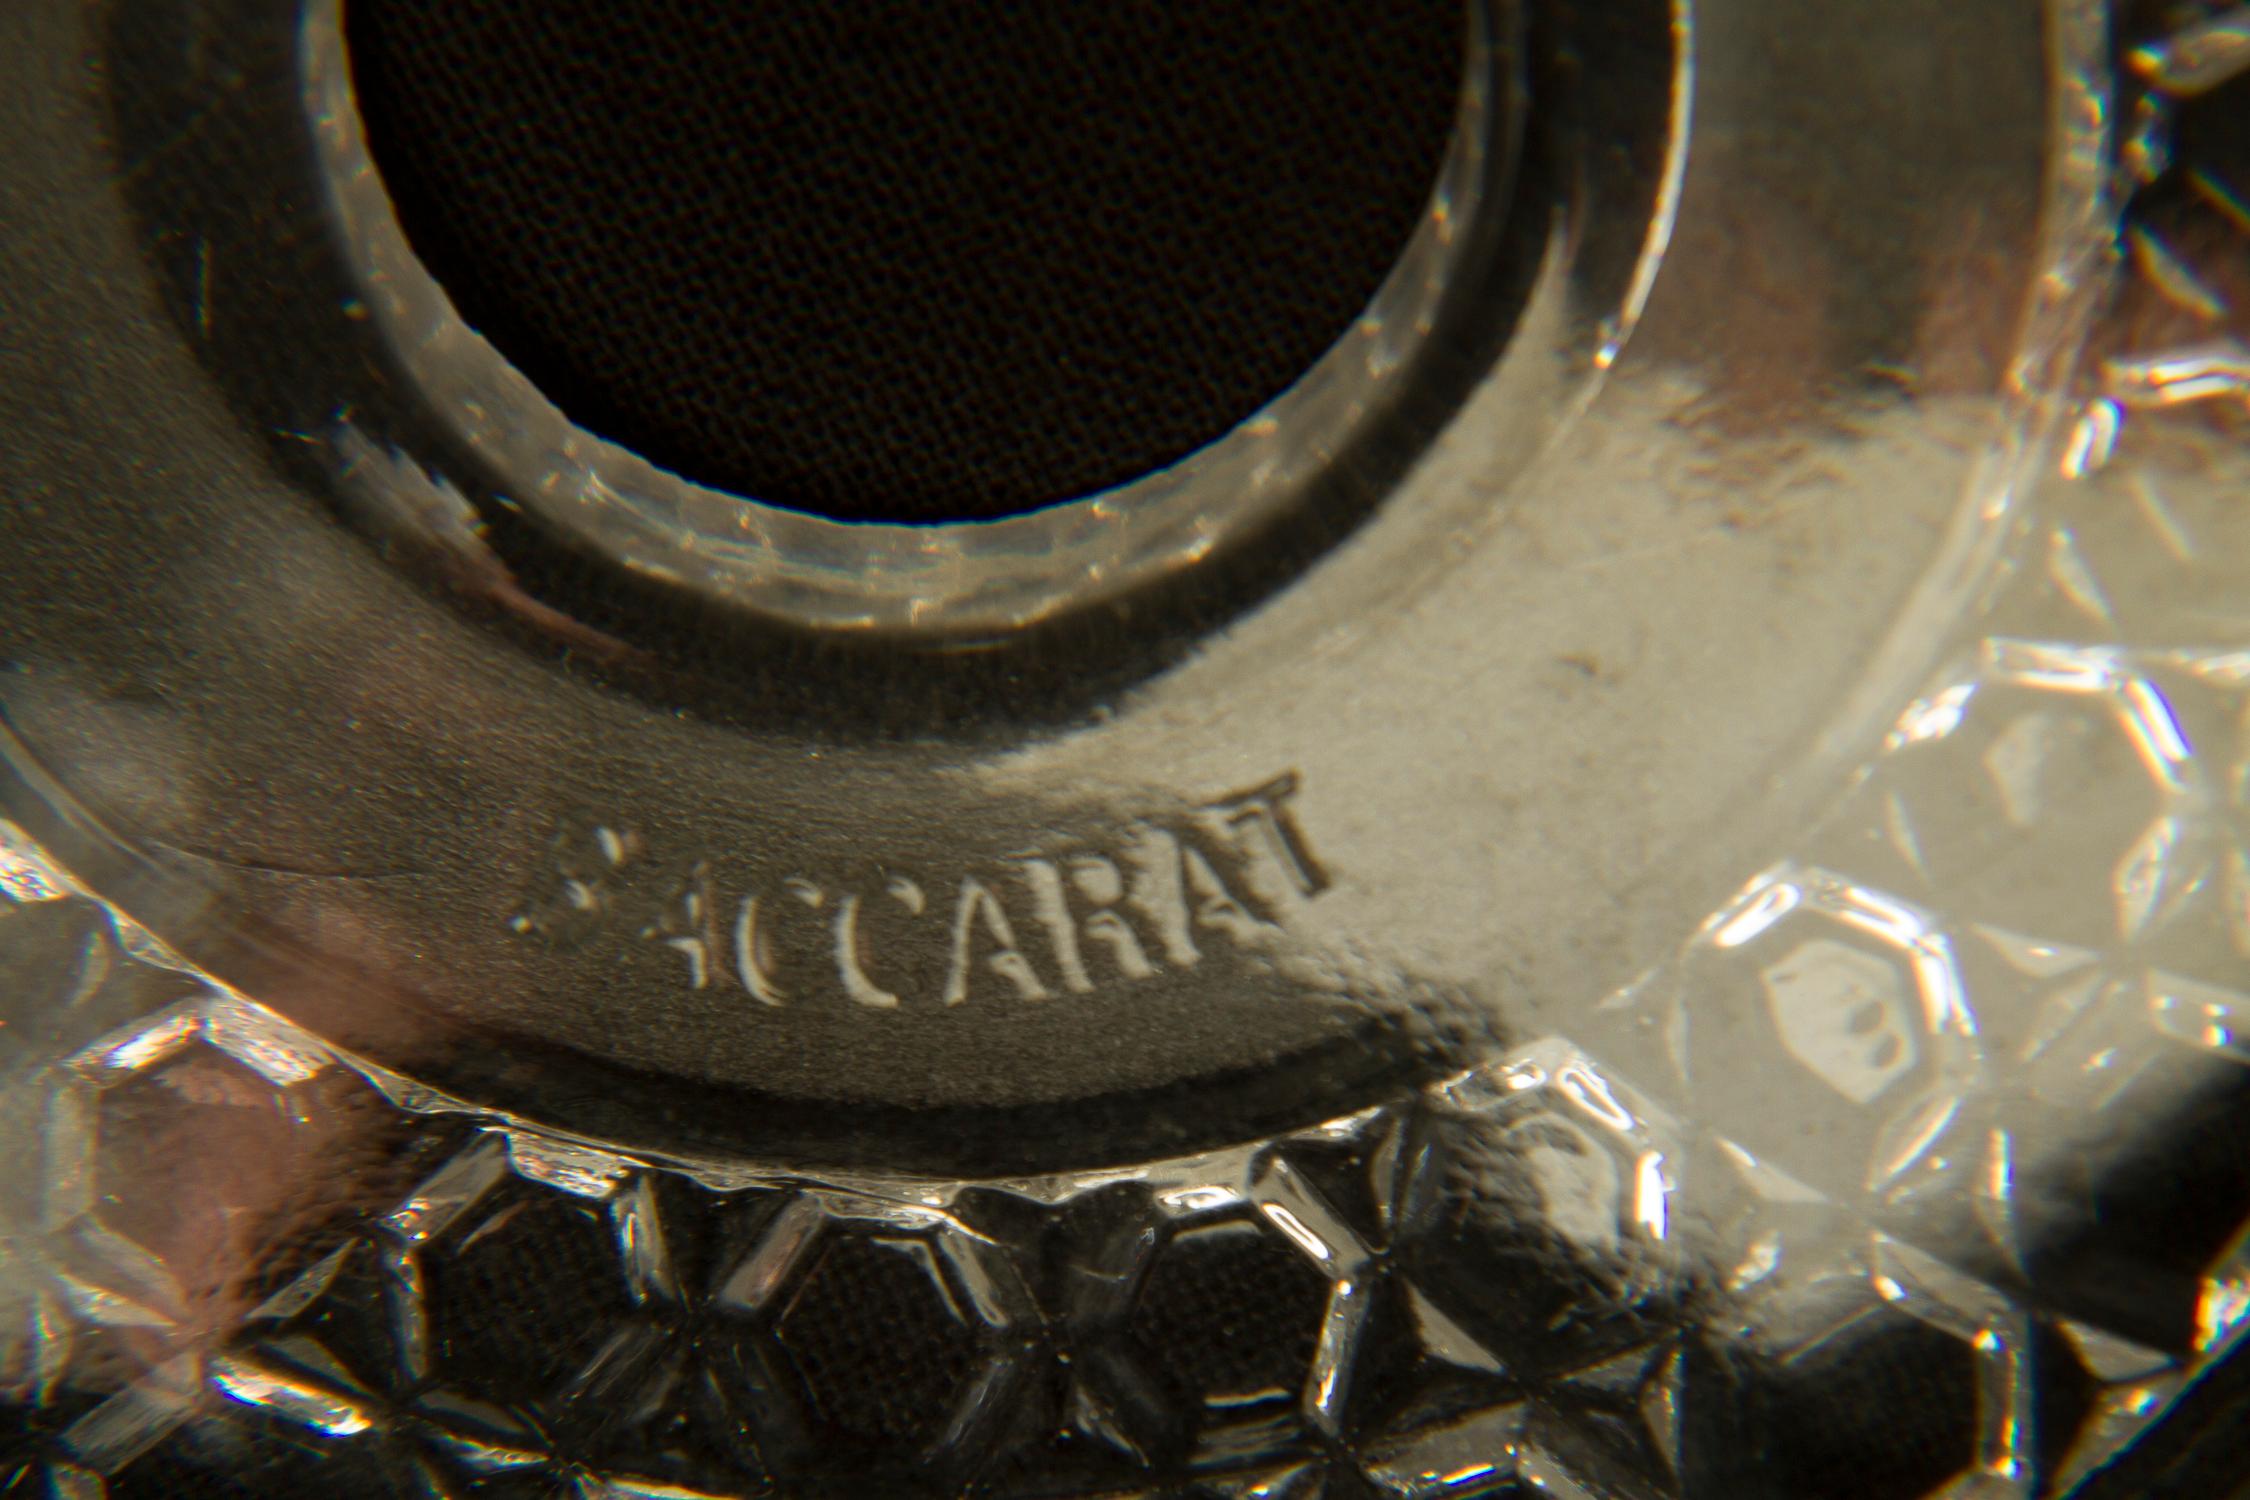 Dieser elegante 6-flammige Kronleuchter aus Bronze und Kristall im Louis XVI-Stil verfügt über Kristallbögen mit dem berühmten Markenzeichen Baccarat